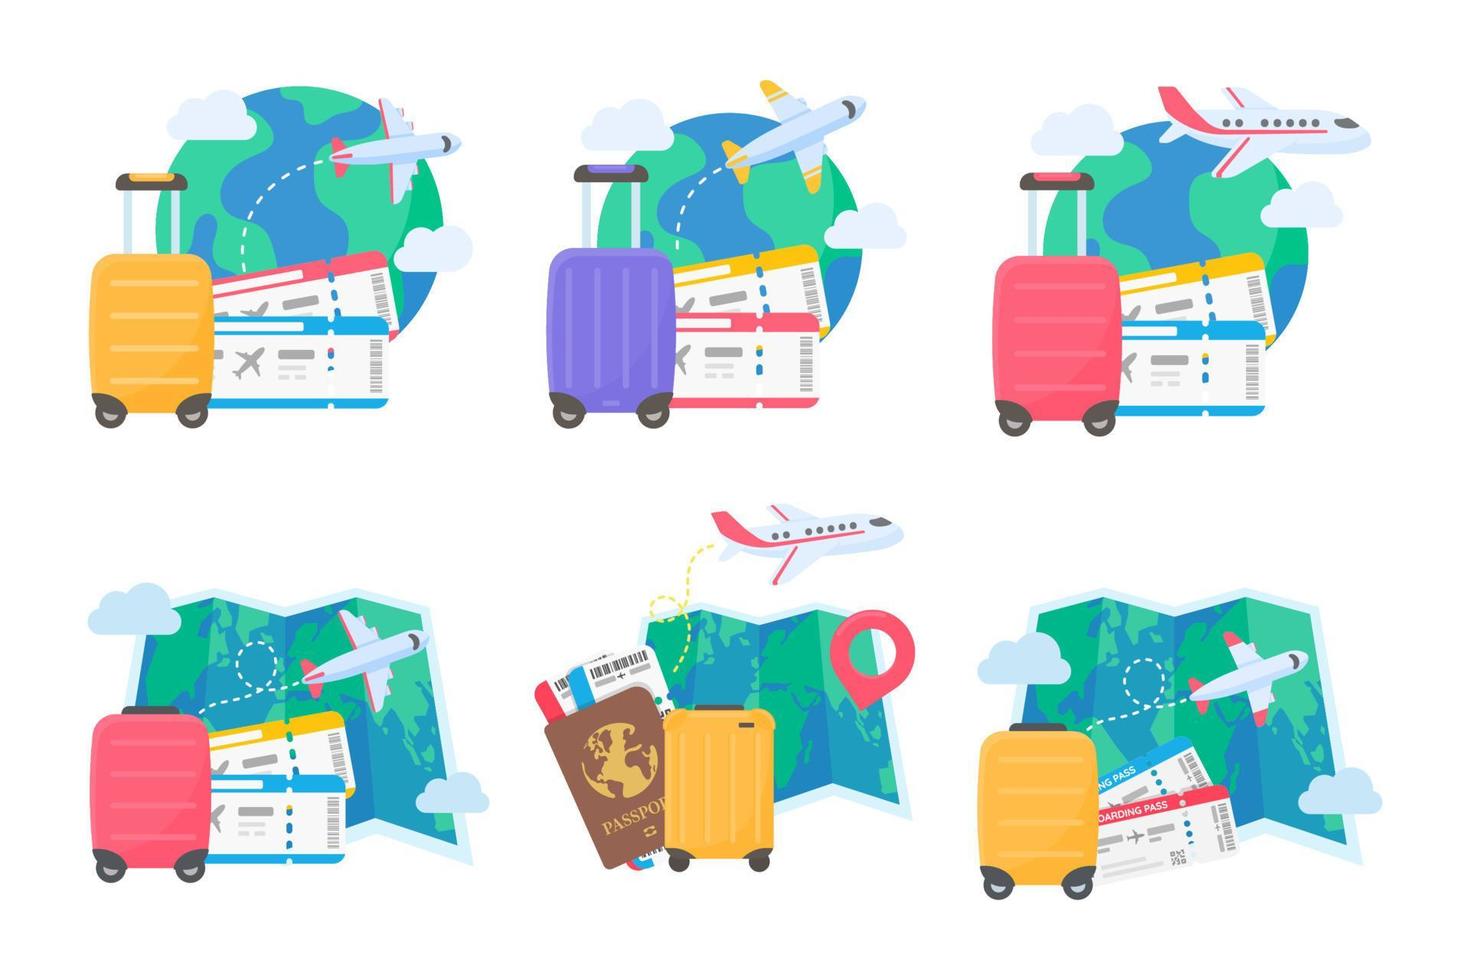 la mappa del mondo è appuntata per pianificare i viaggi delle compagnie aeree internazionali. con bagagli e biglietti aerei vettore